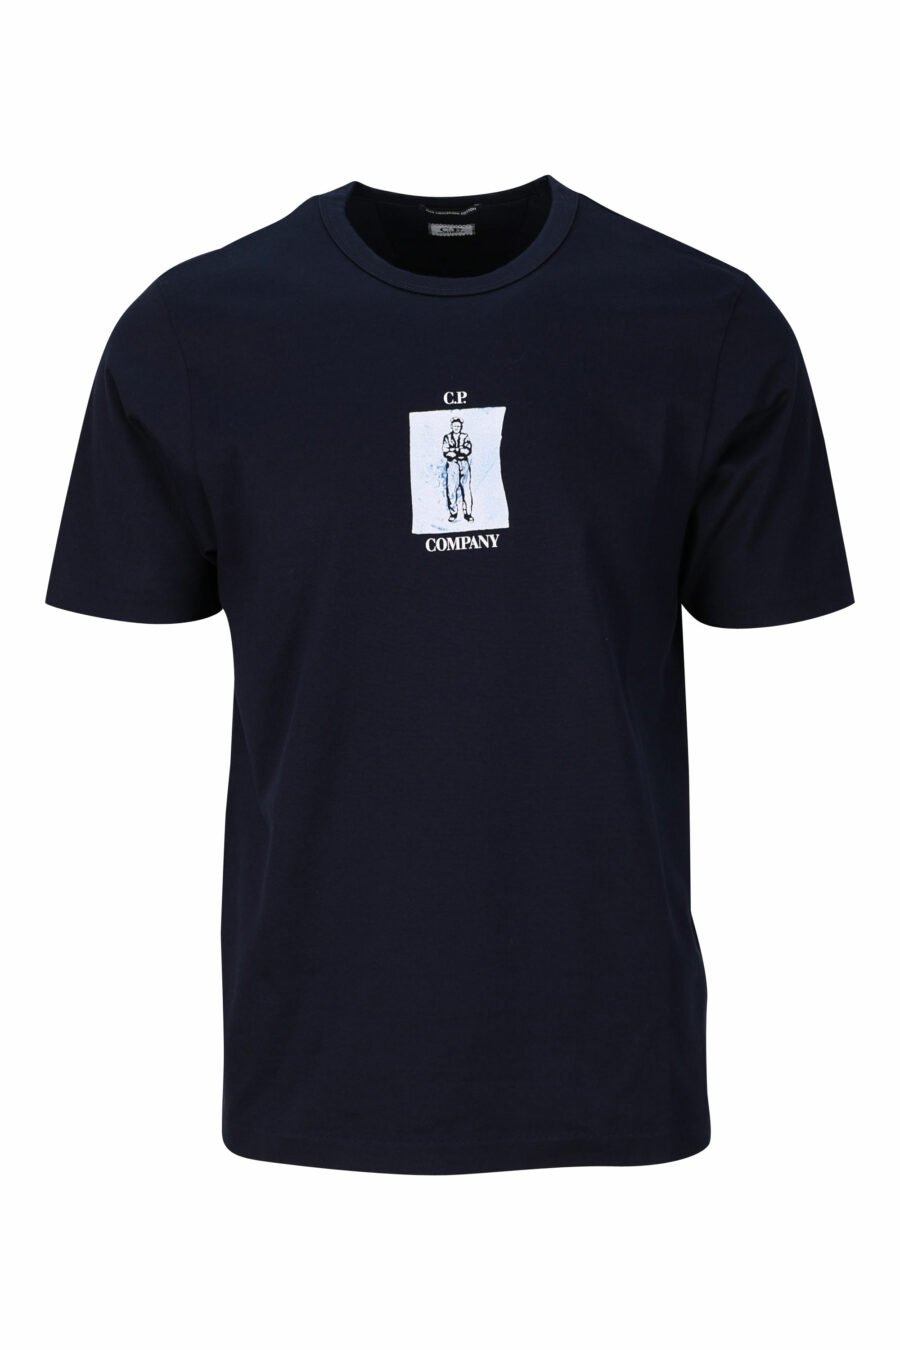 Camiseta azul oscura con logo marinero y estampado detrás - 7620943766189